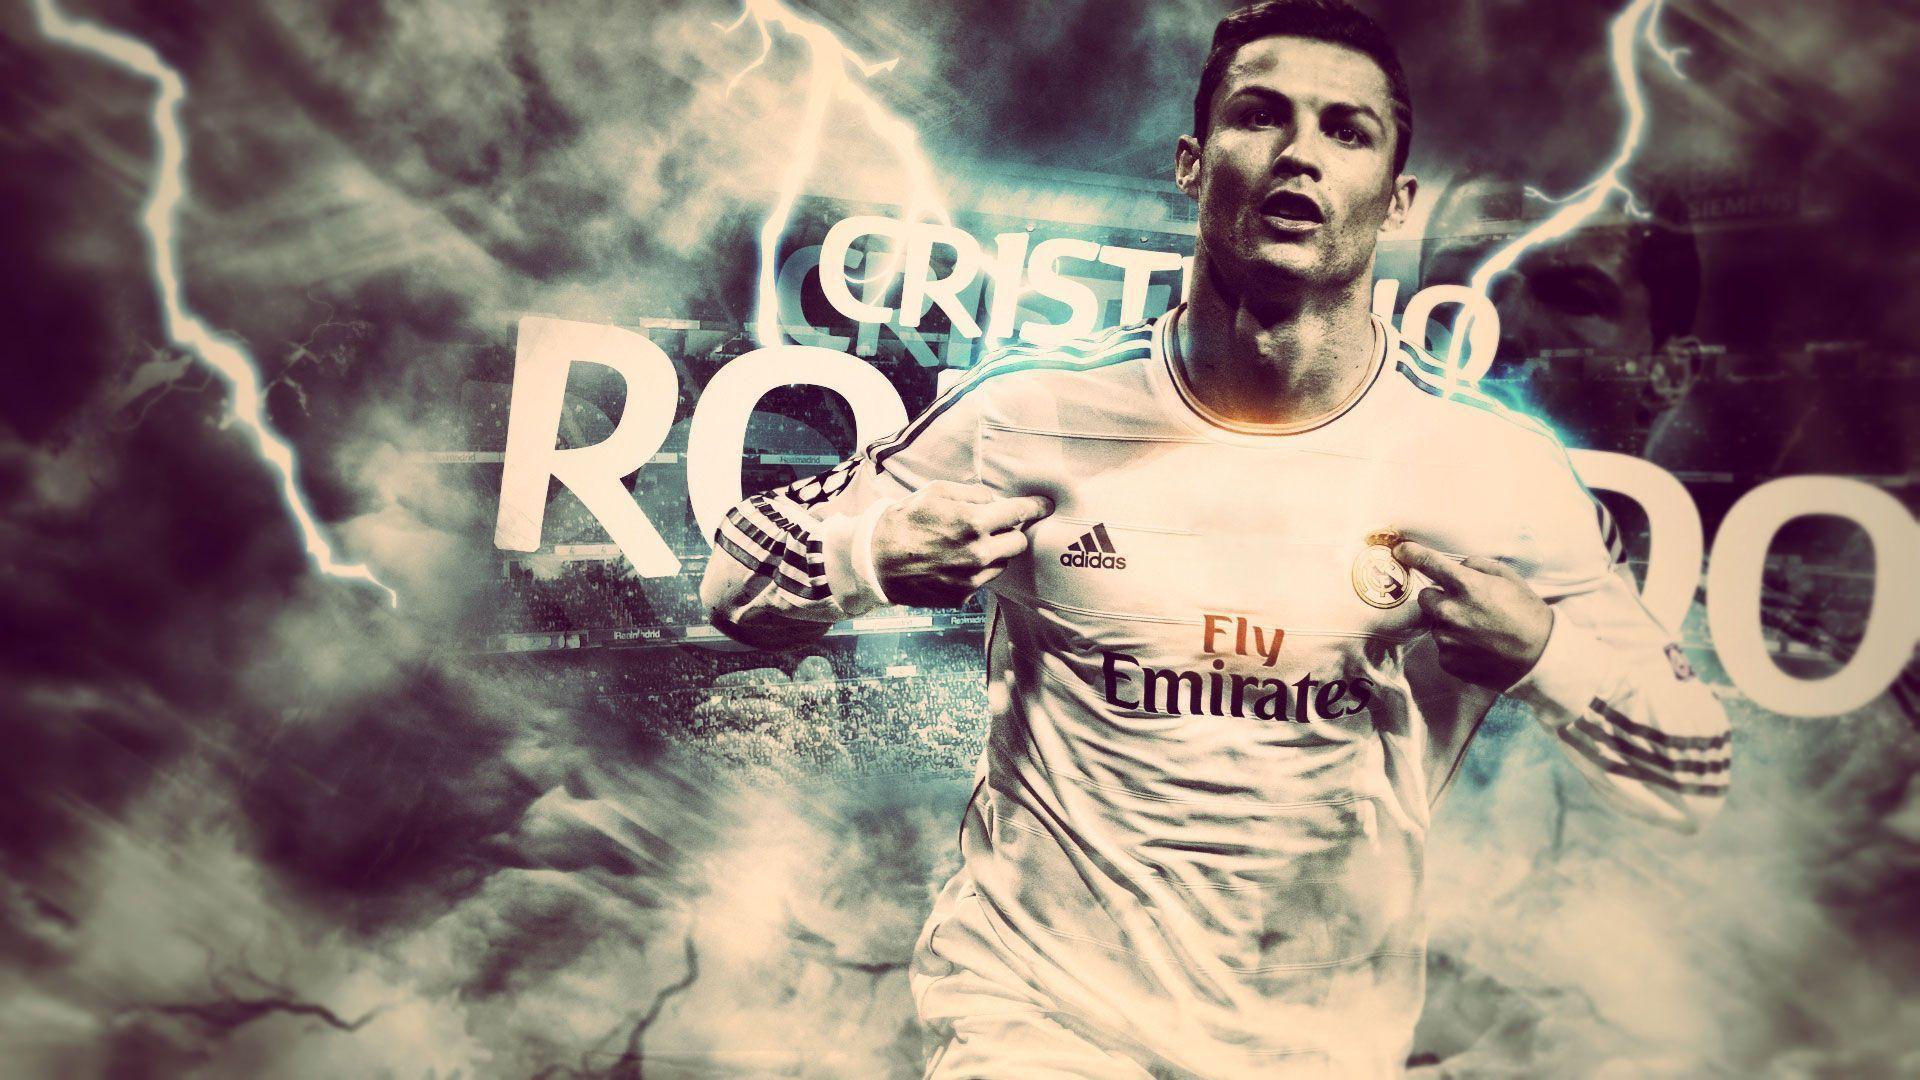 Cristiano Ronaldo CR7 2014 Wallpaper Wide or HD. Male Celebrities